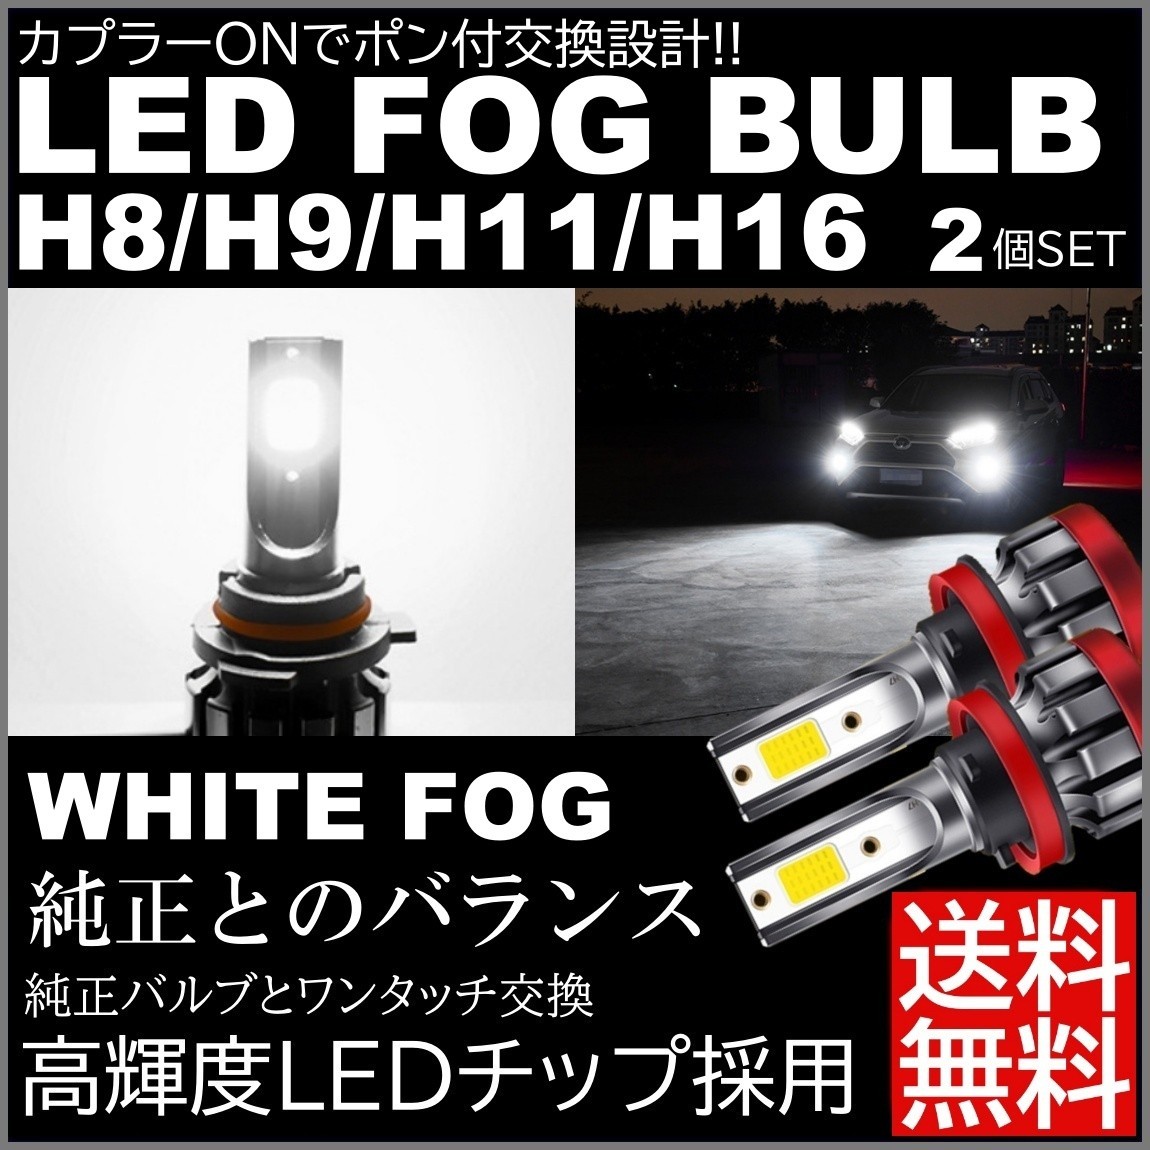 気質アップ LED フォグランプ H8 H9 H11 H16 LEDバルブ 汎用 白 patisseriemimi.jp